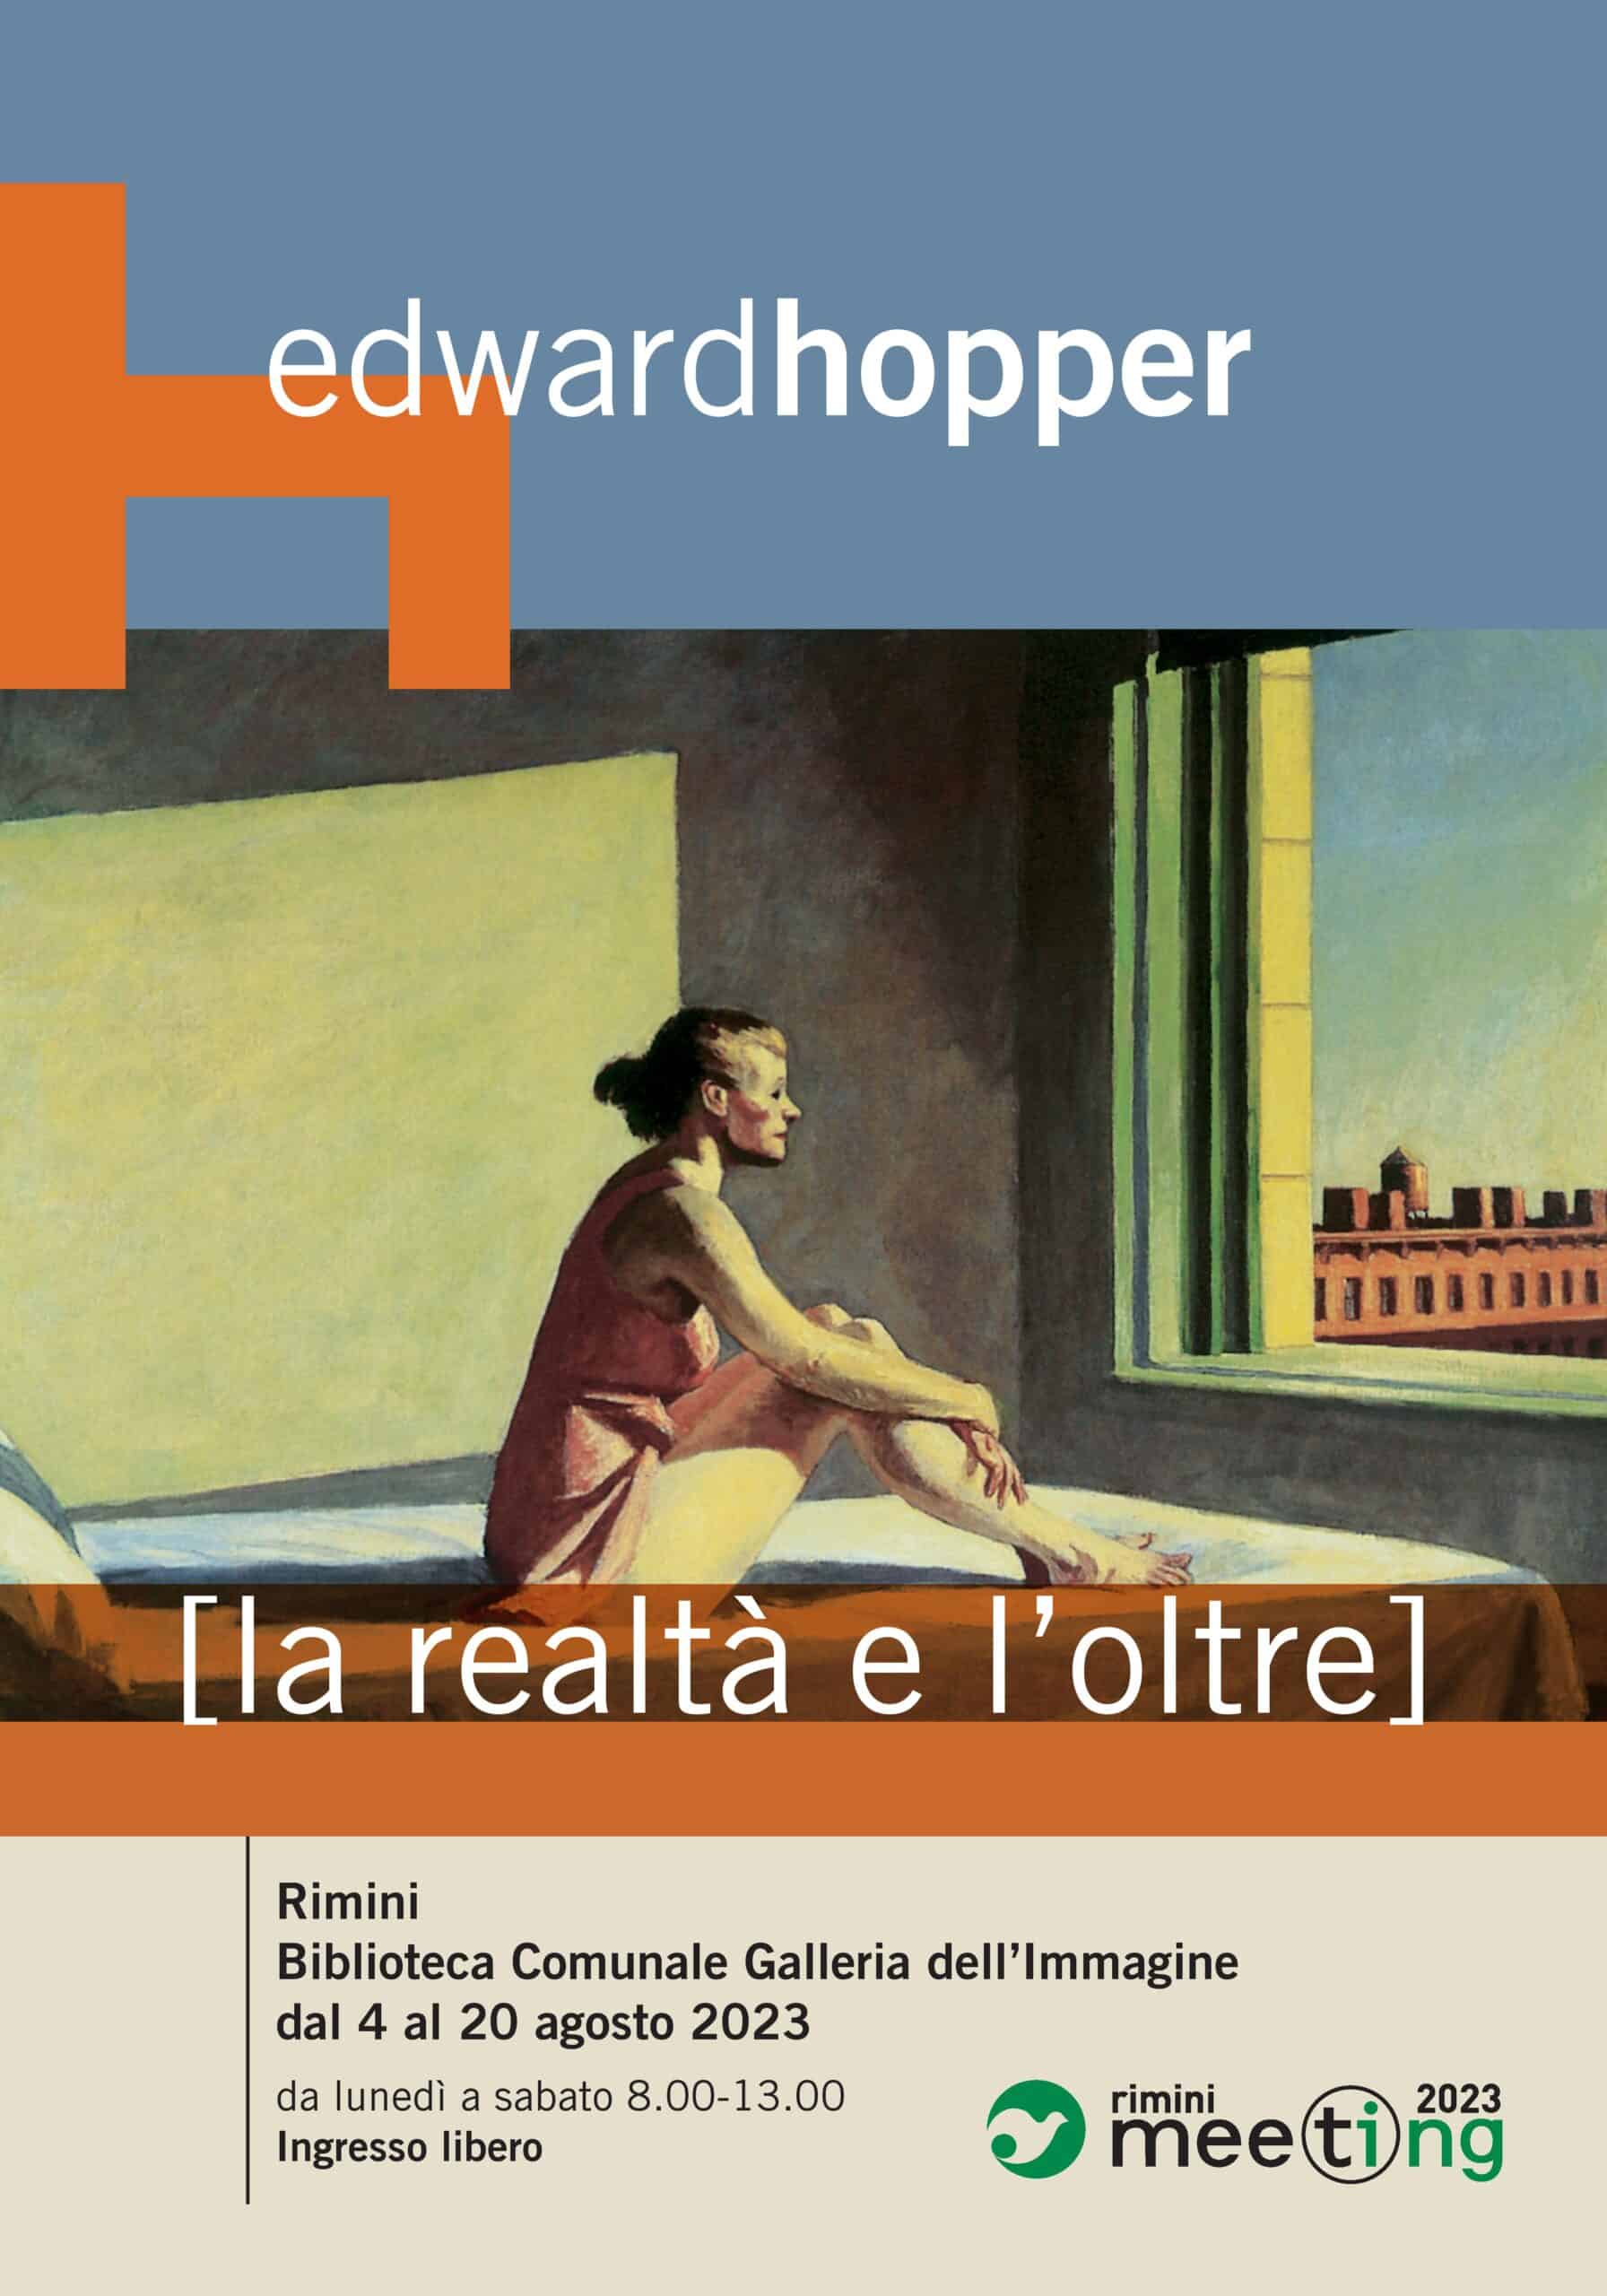 Featured image for “Dal 4 al 25 agosto a Rimini la mostra “Edward Hopper – la realtà e l’oltre””